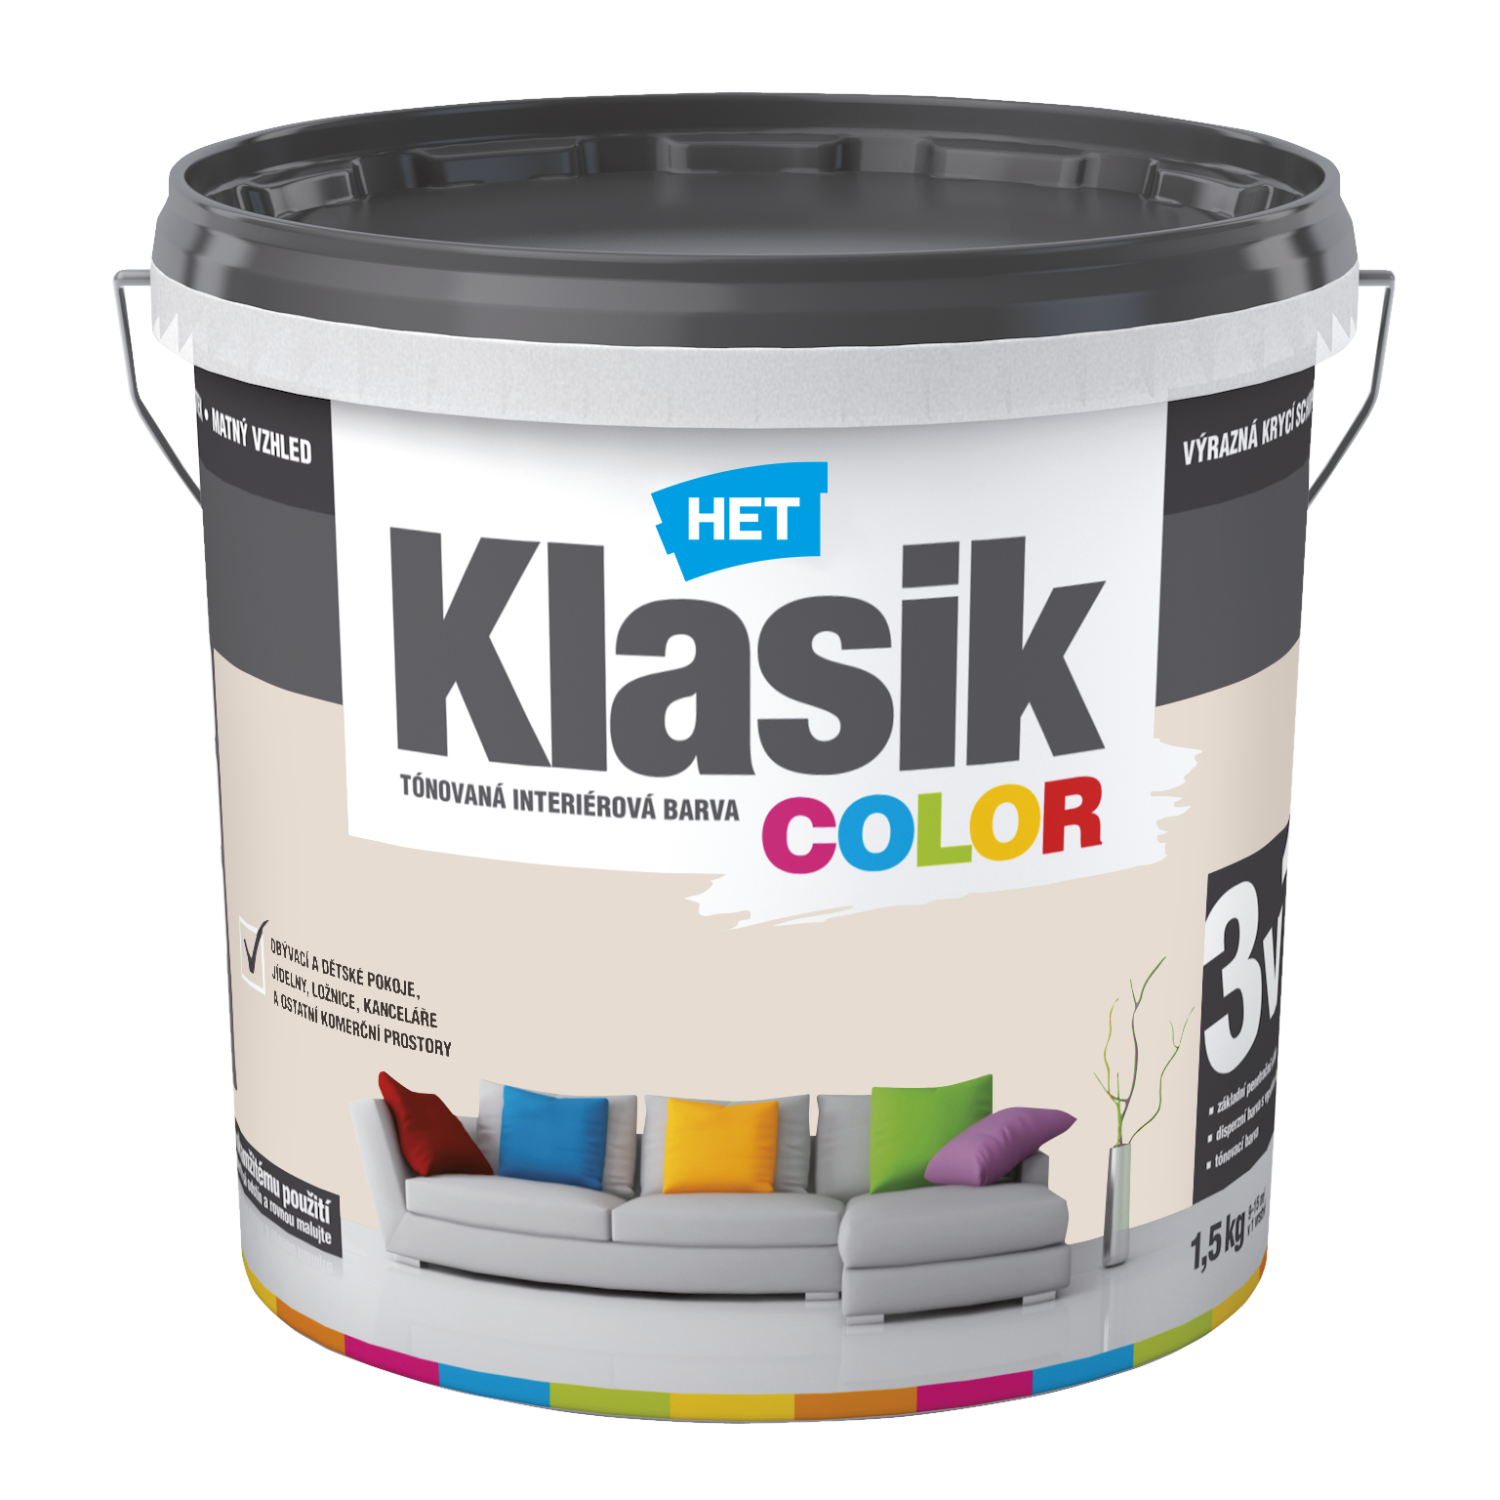 HET Klasik COLOR tónovaná interiérová akrylátová disperzná oteruvzdorná farba 1,5 kg, KC0218 - béžový pieskový